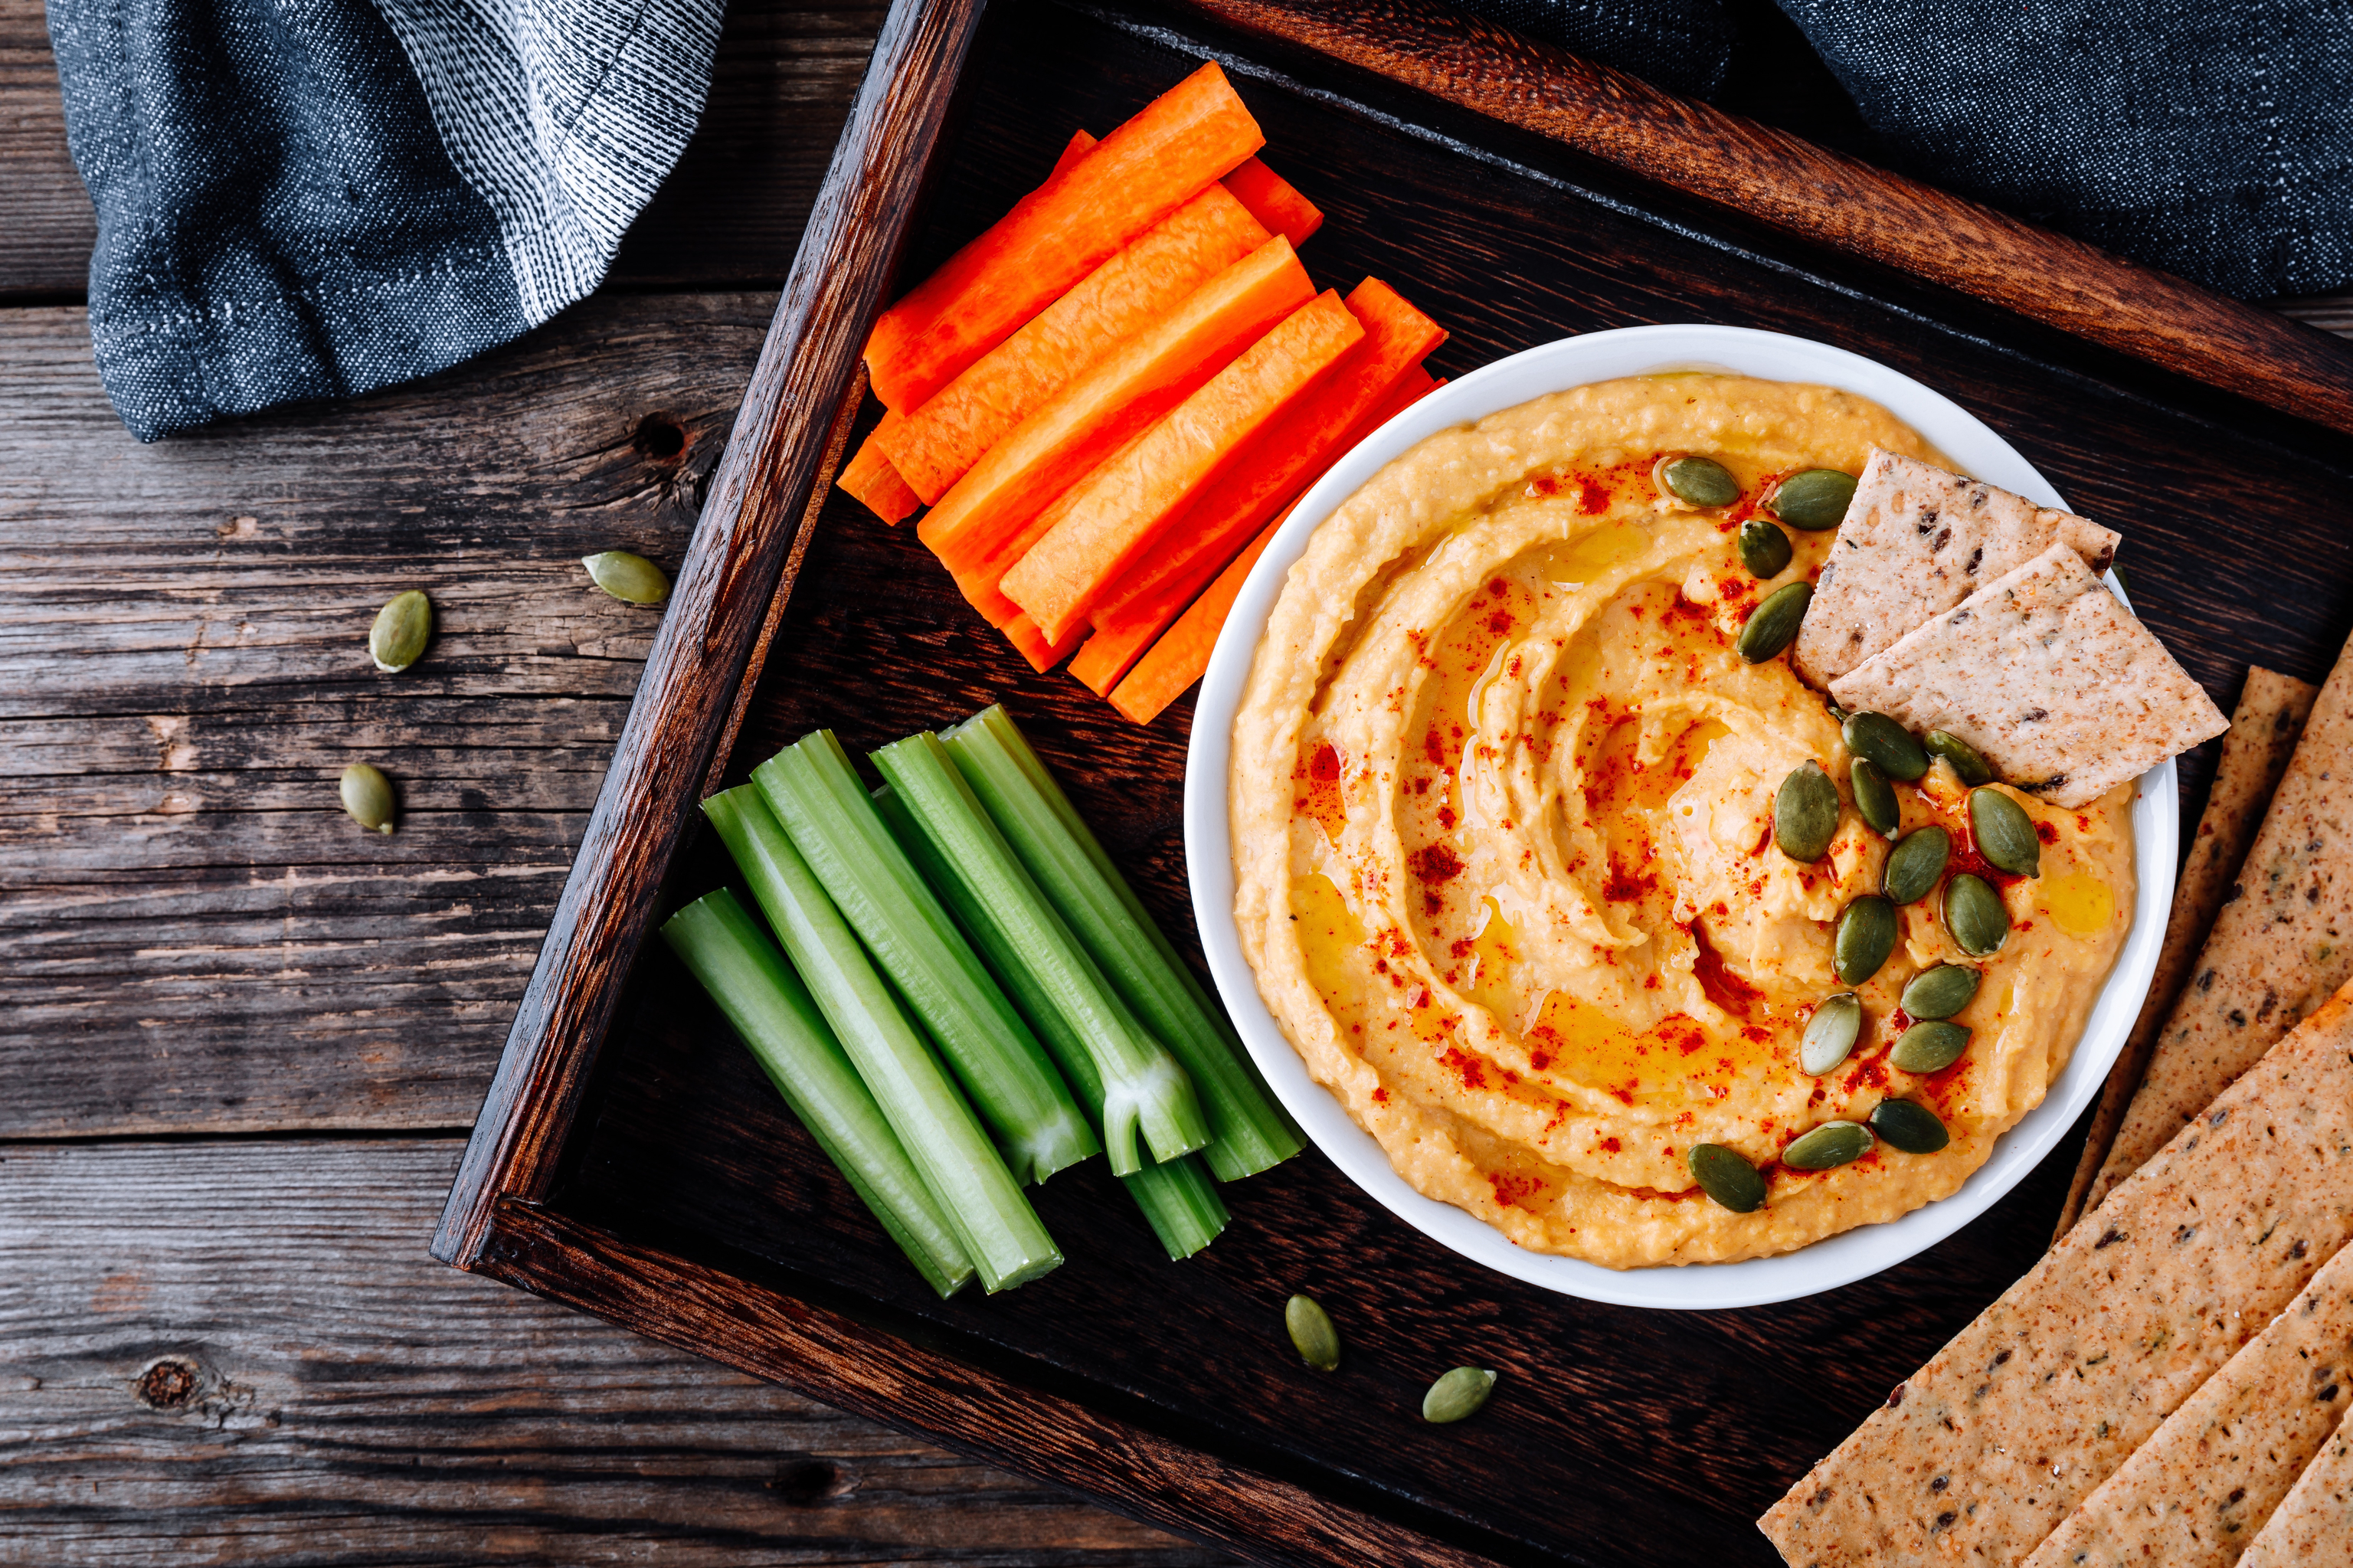 Hummus de garbanzo con crudités de verduras: el snack estrella del verano |  Lifestyle